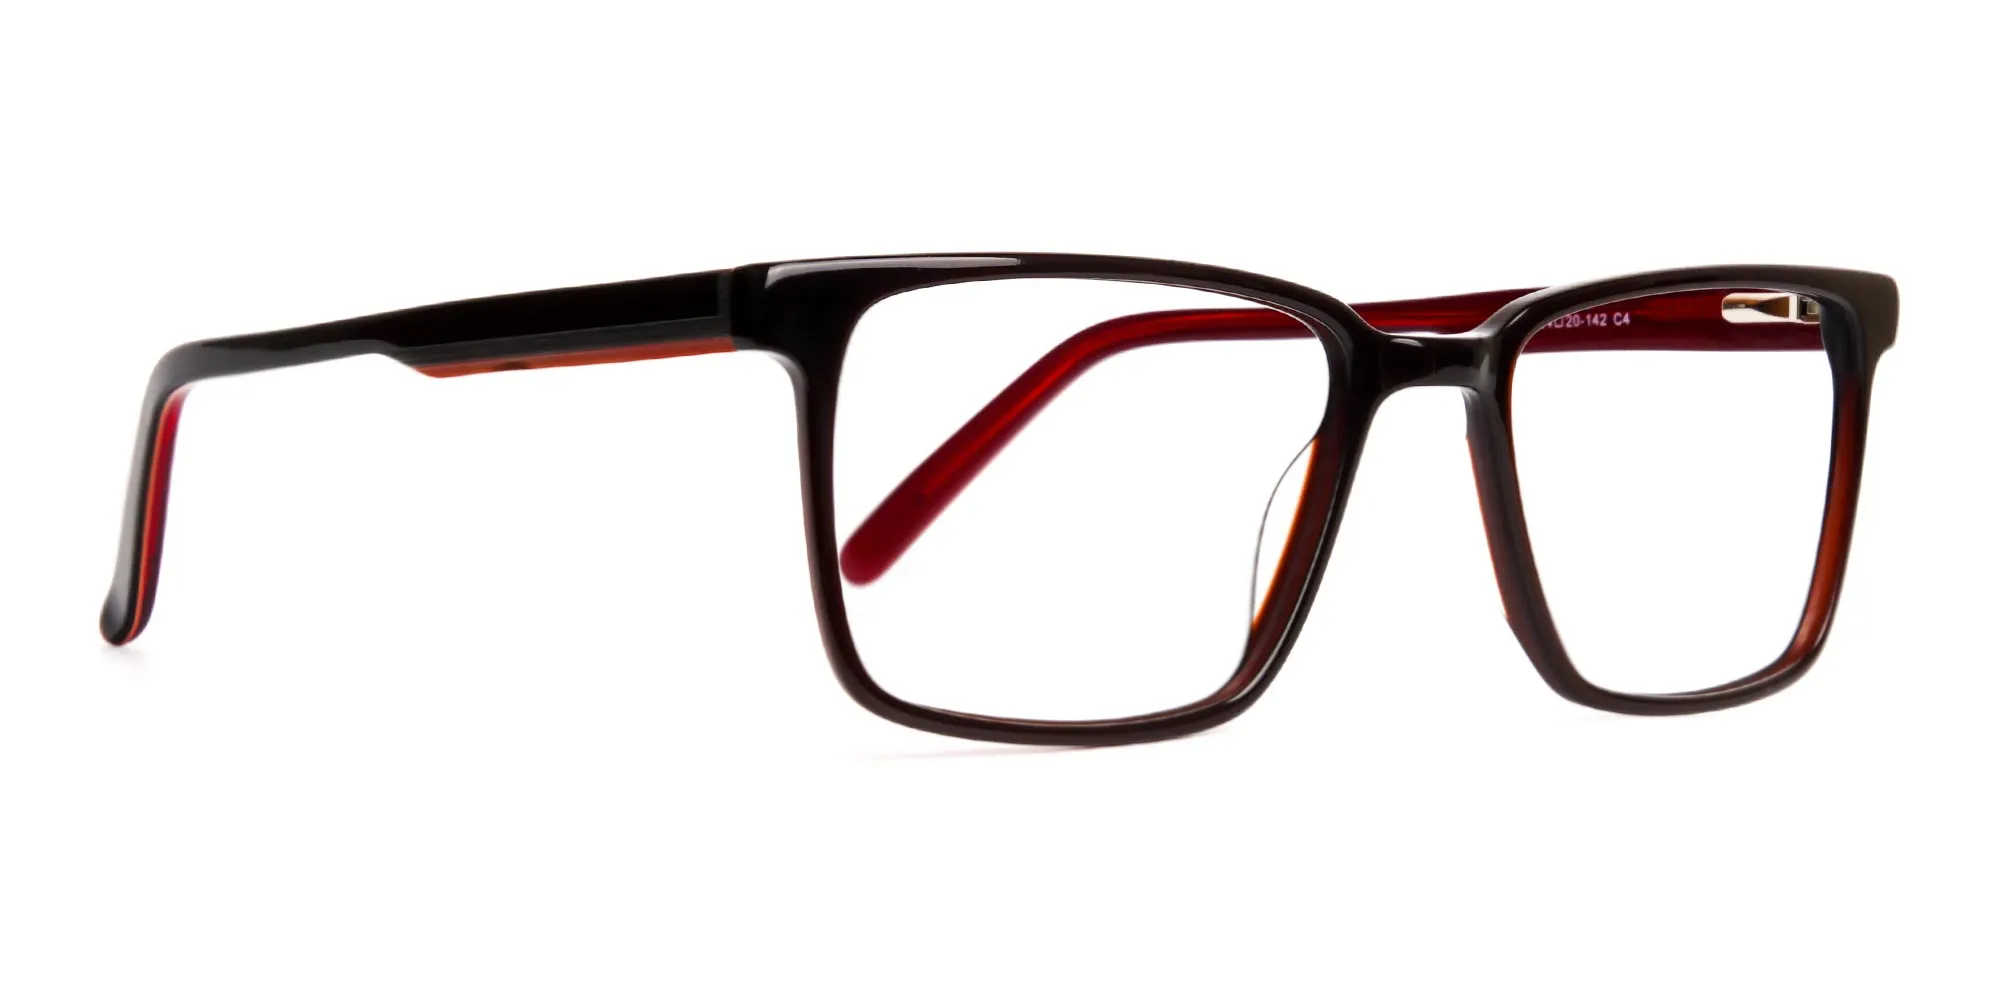 dark brown Rectangular full rim Glasses frames-2